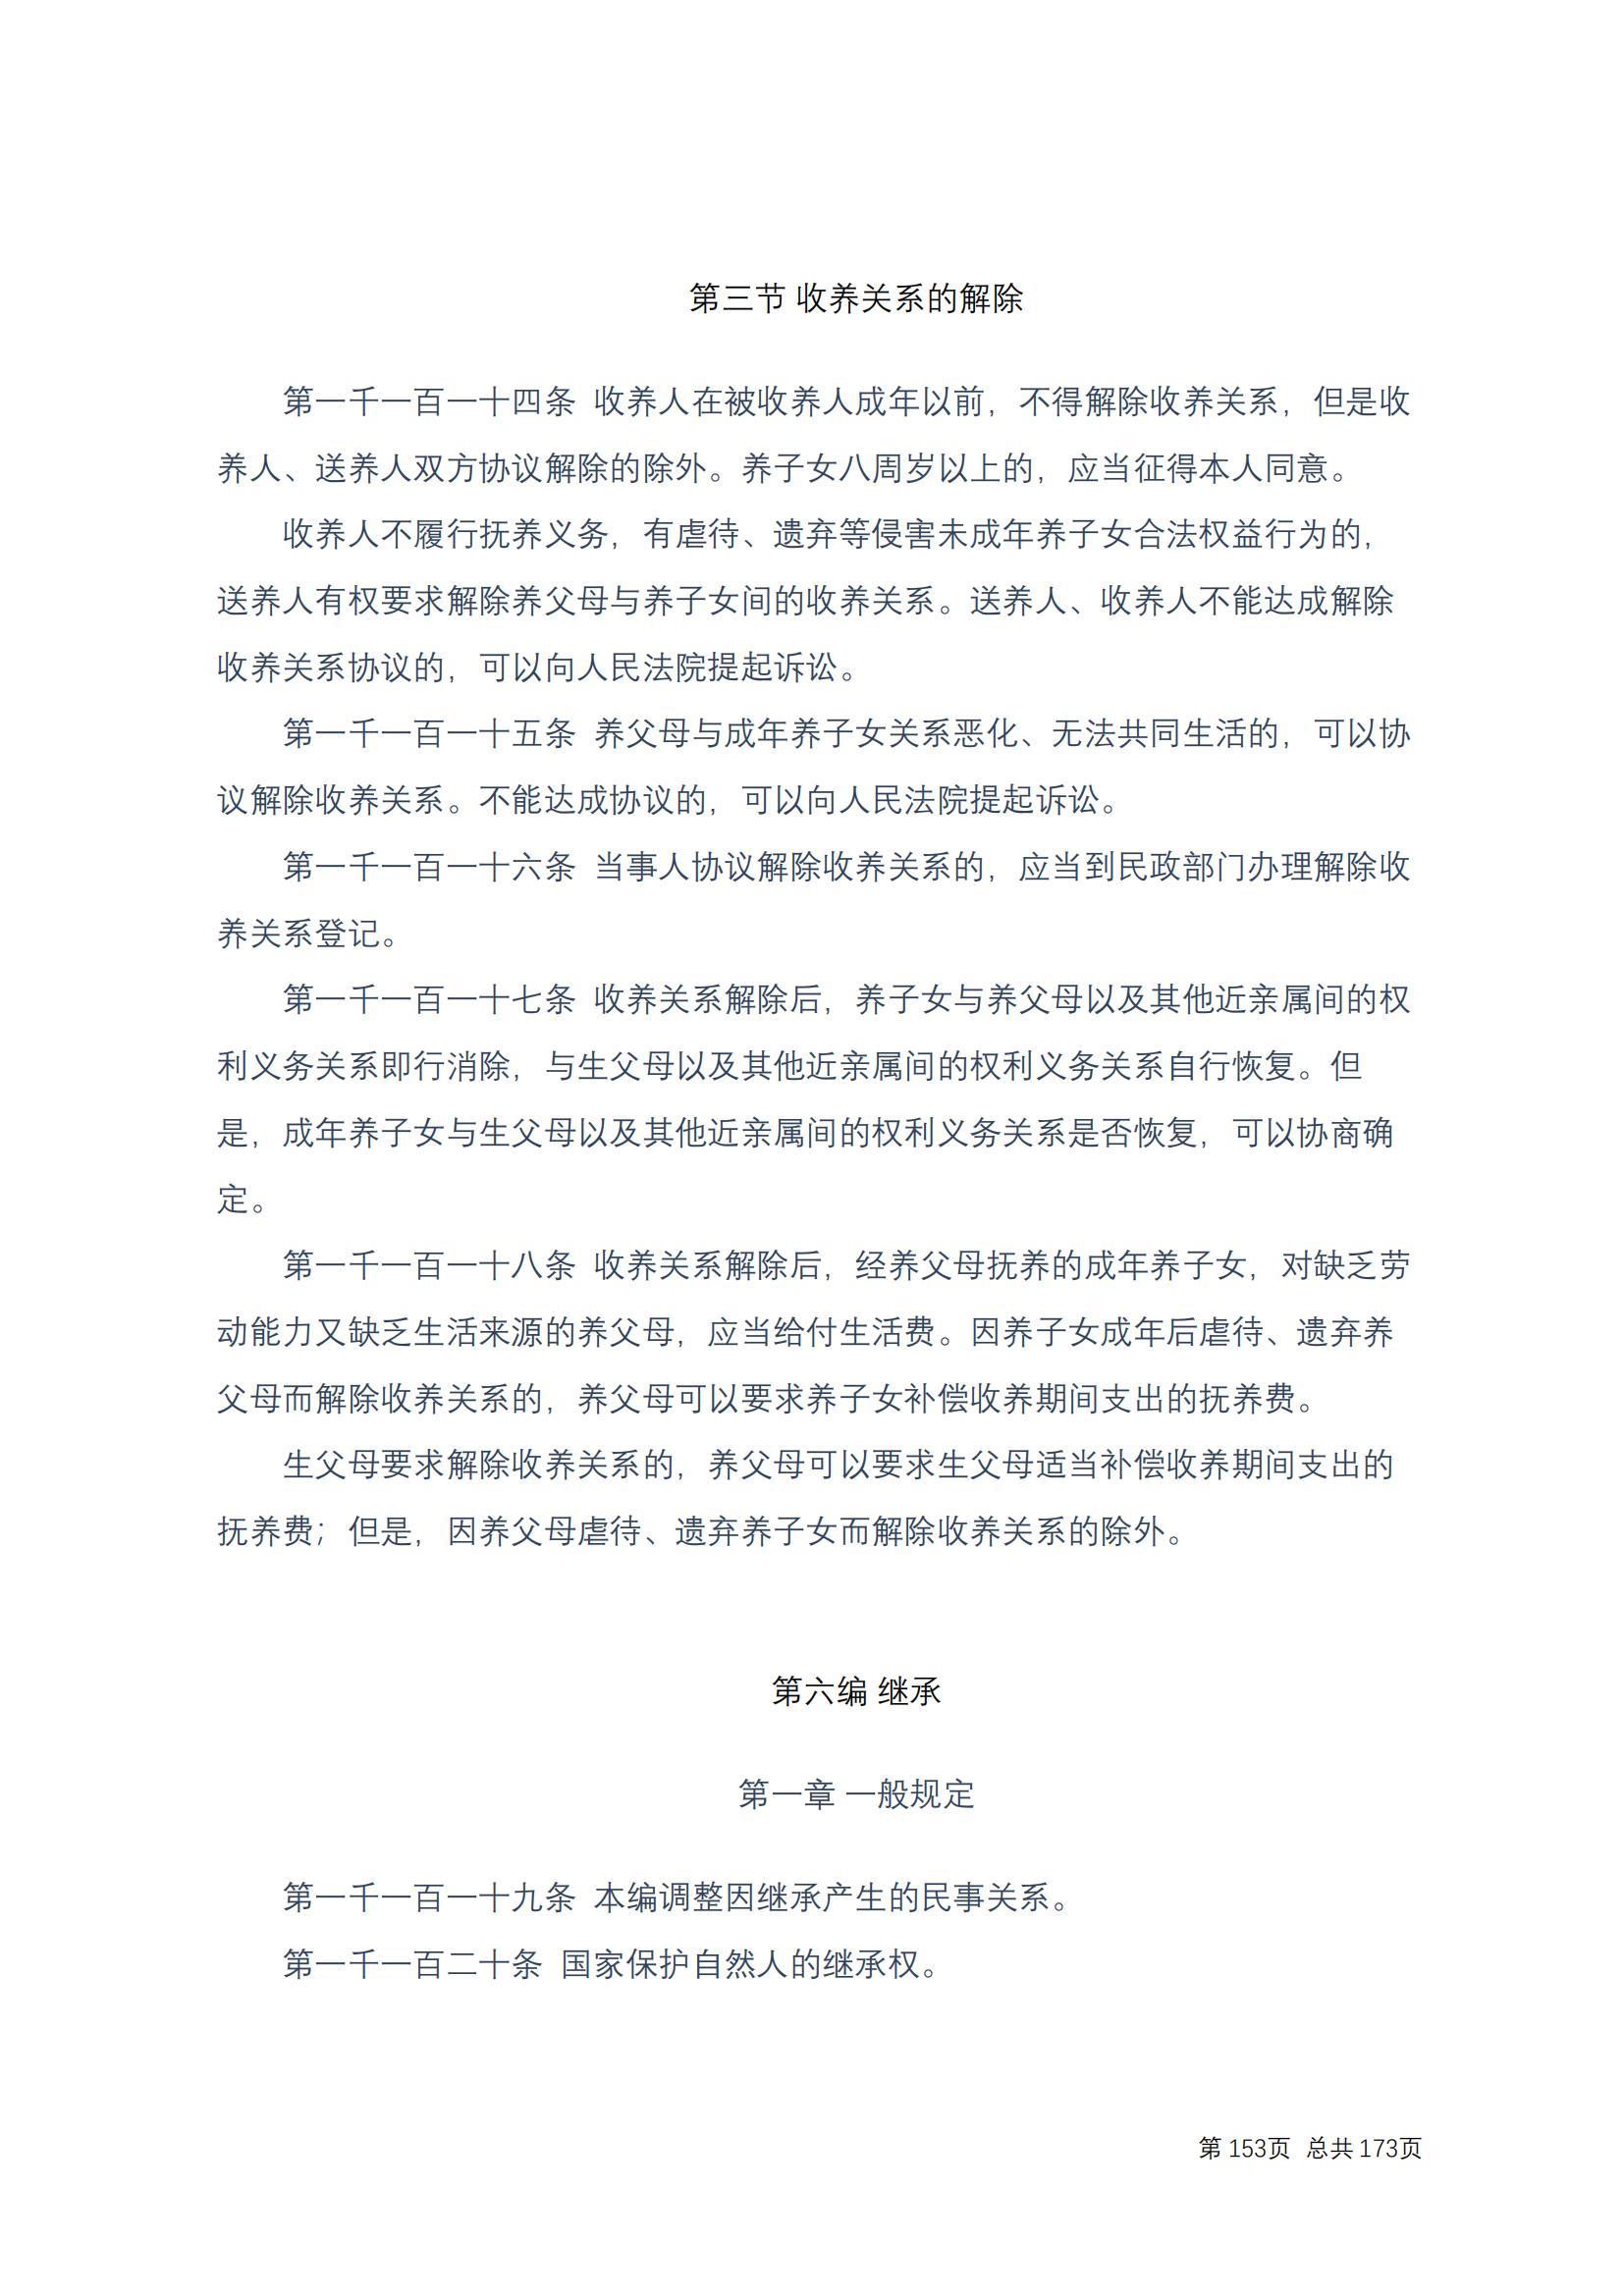 中华人民共和国民法典 修改过_152